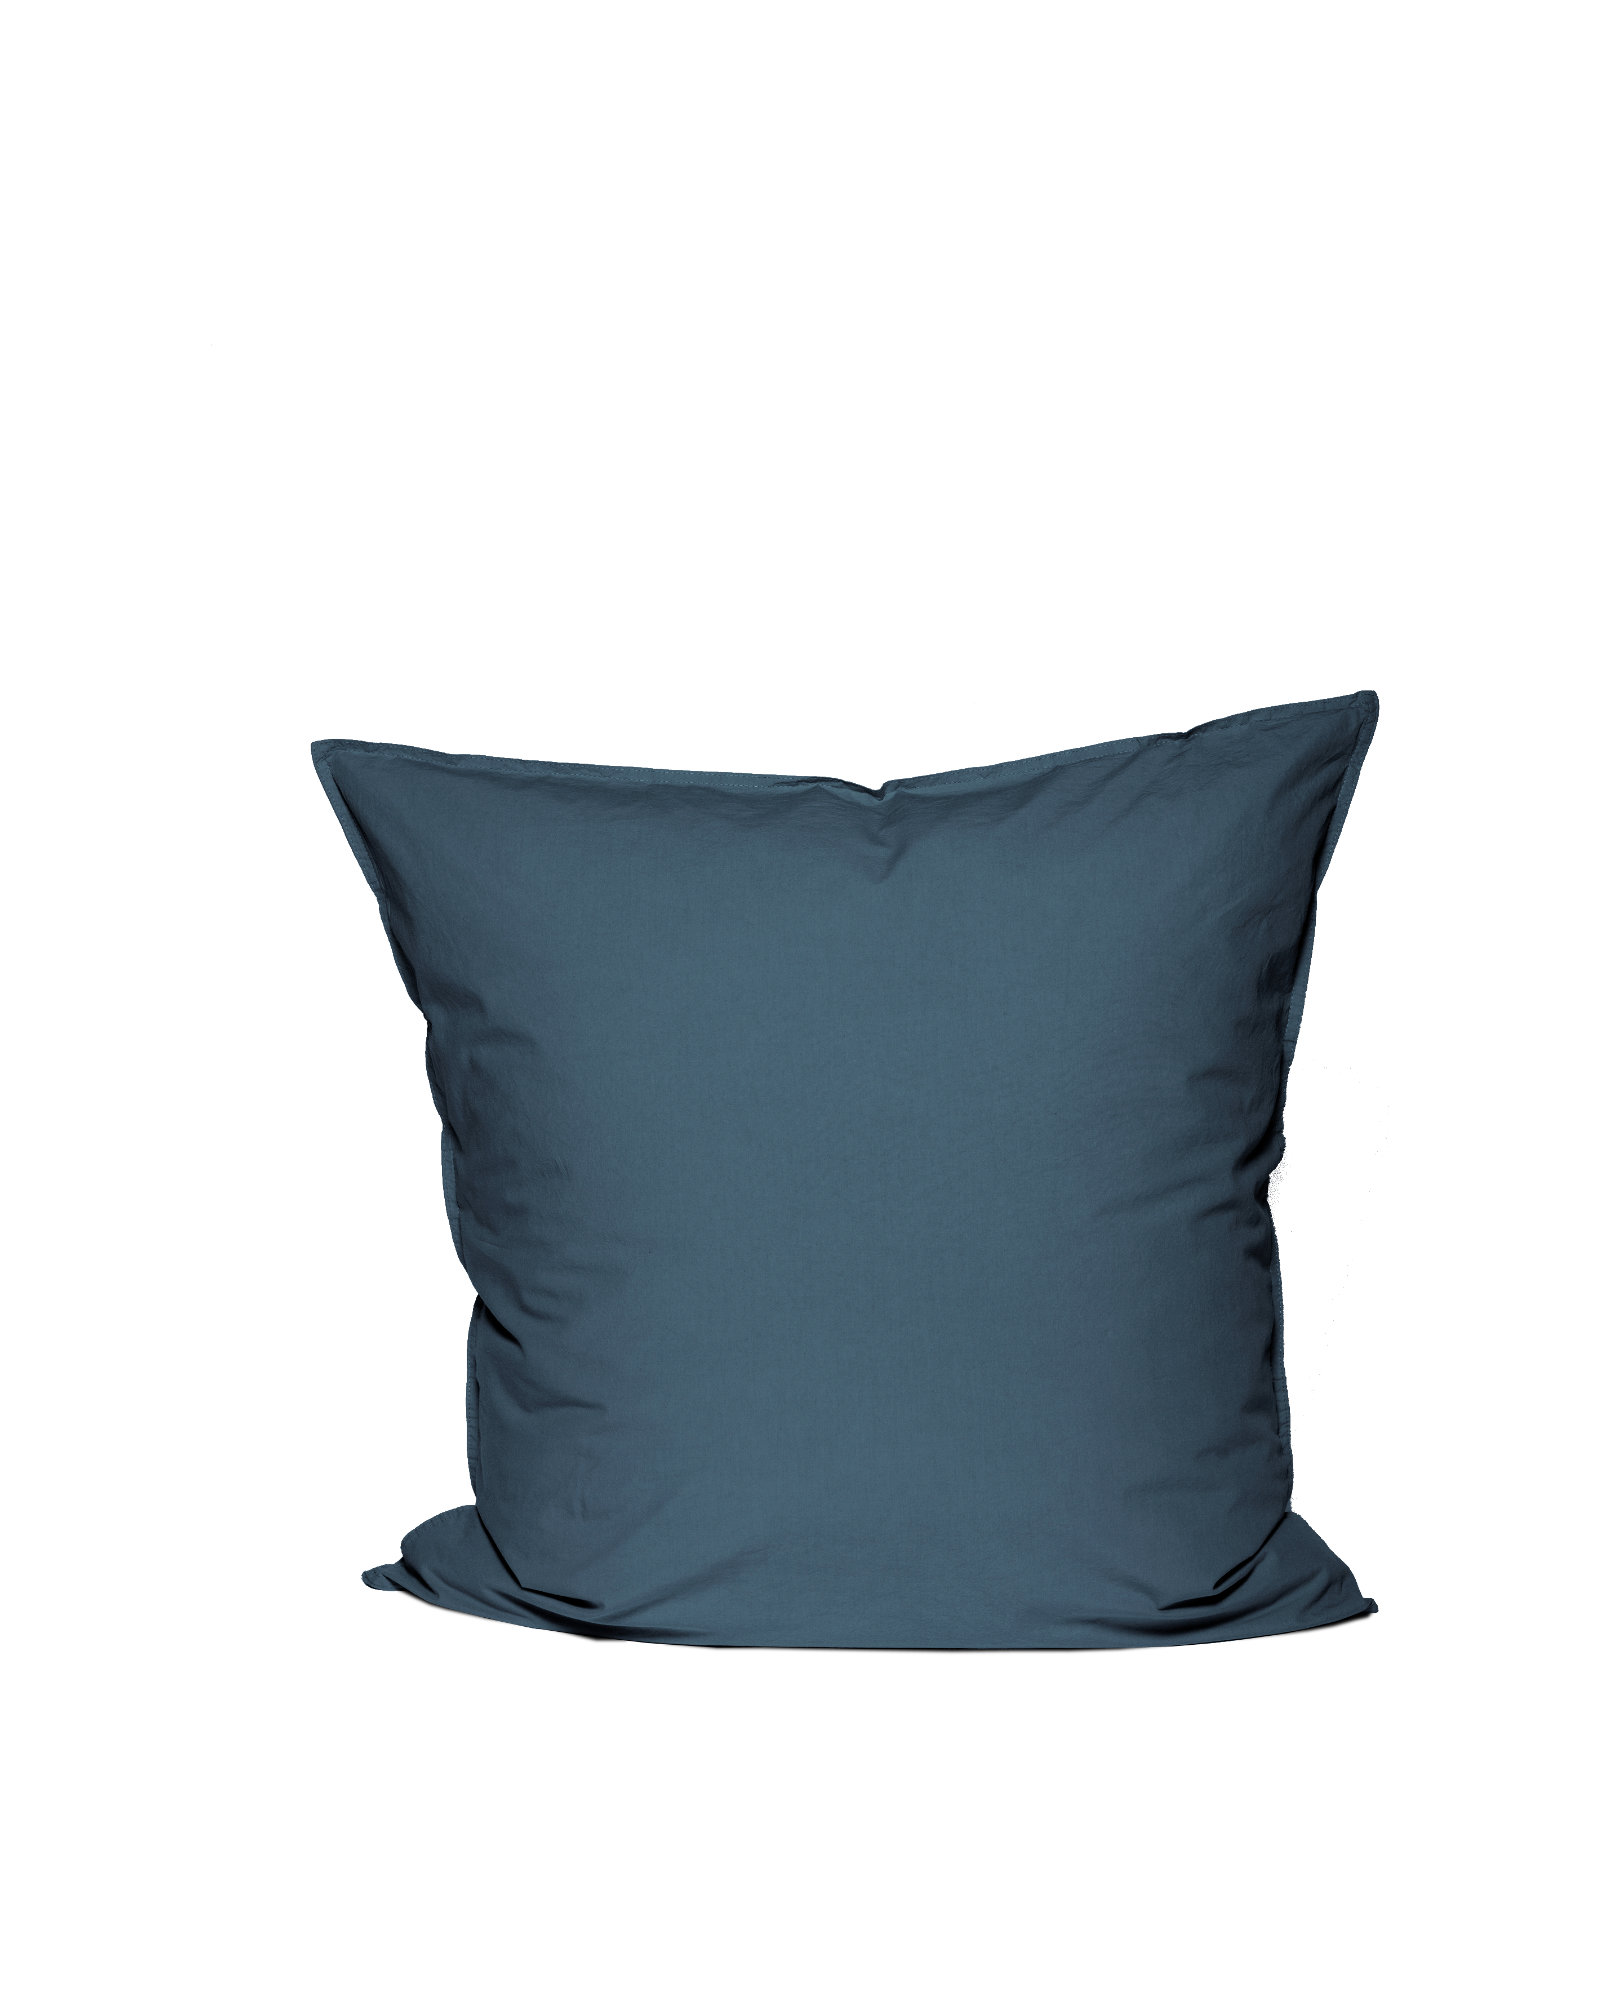 MARIE-MARIE - Pillowcase VINTAGE COTTON Yale Blue - 65x65 cm - Yale Blue